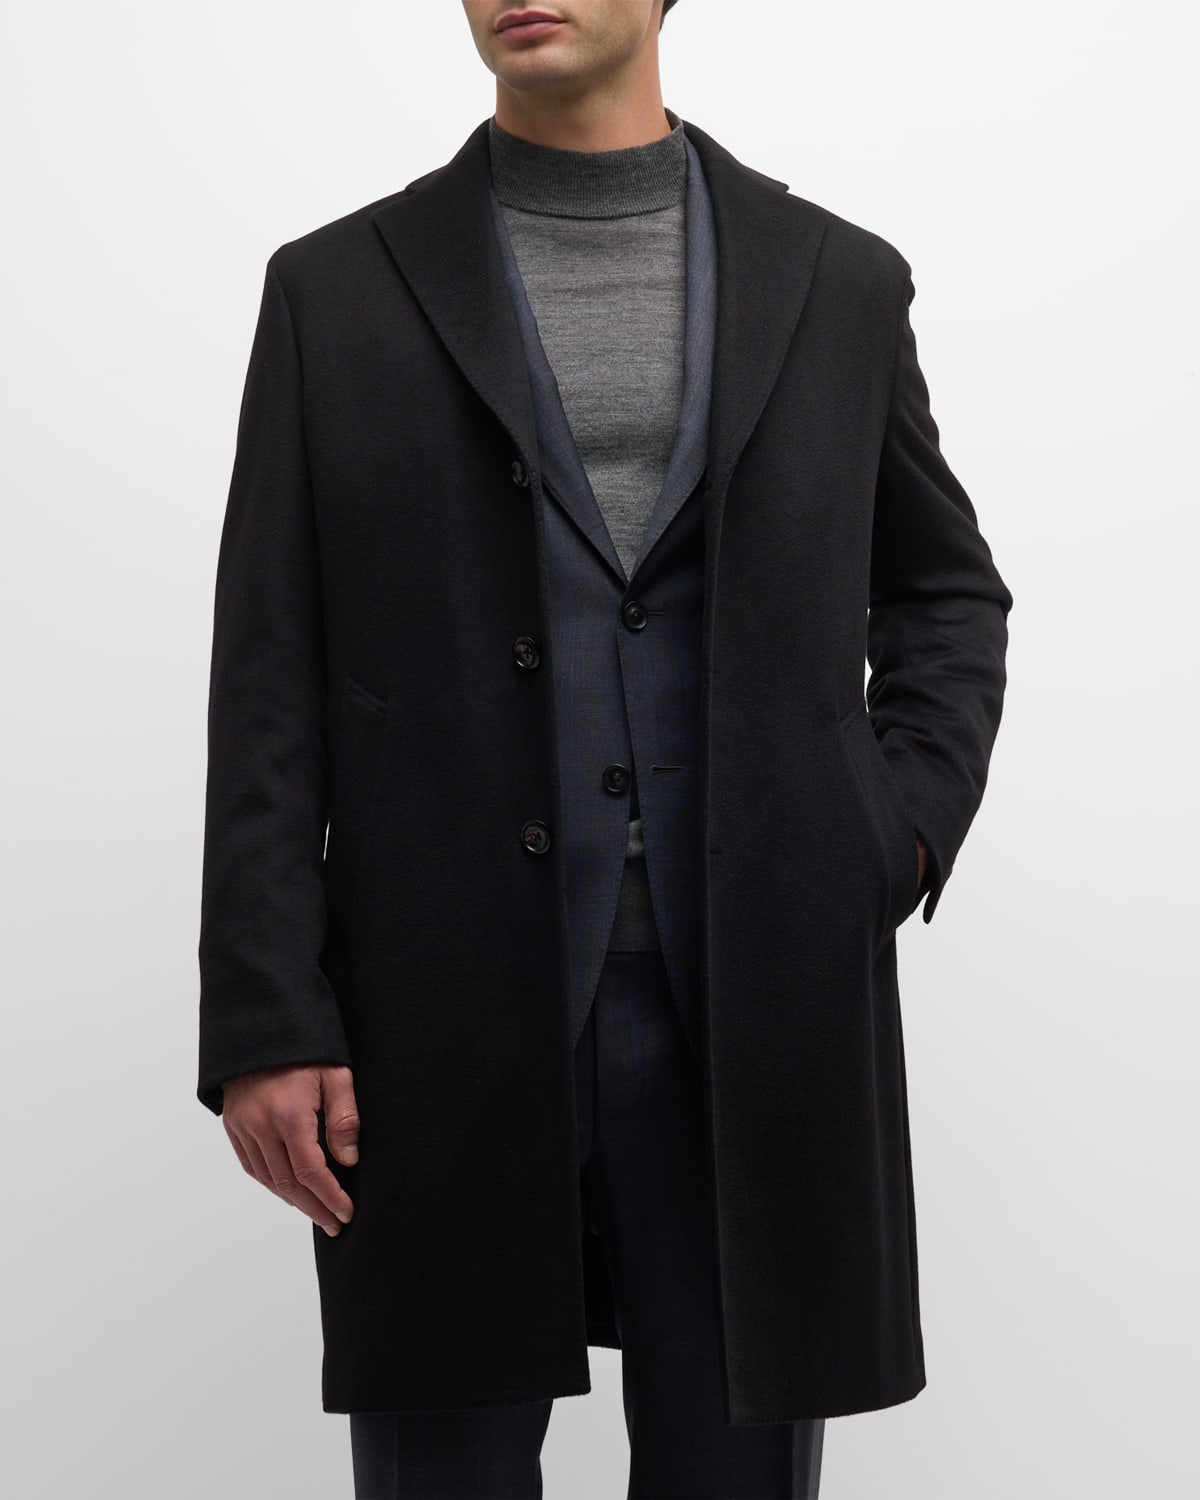 Neiman Marcus Men's Solid Cashmere Topcoat In Black